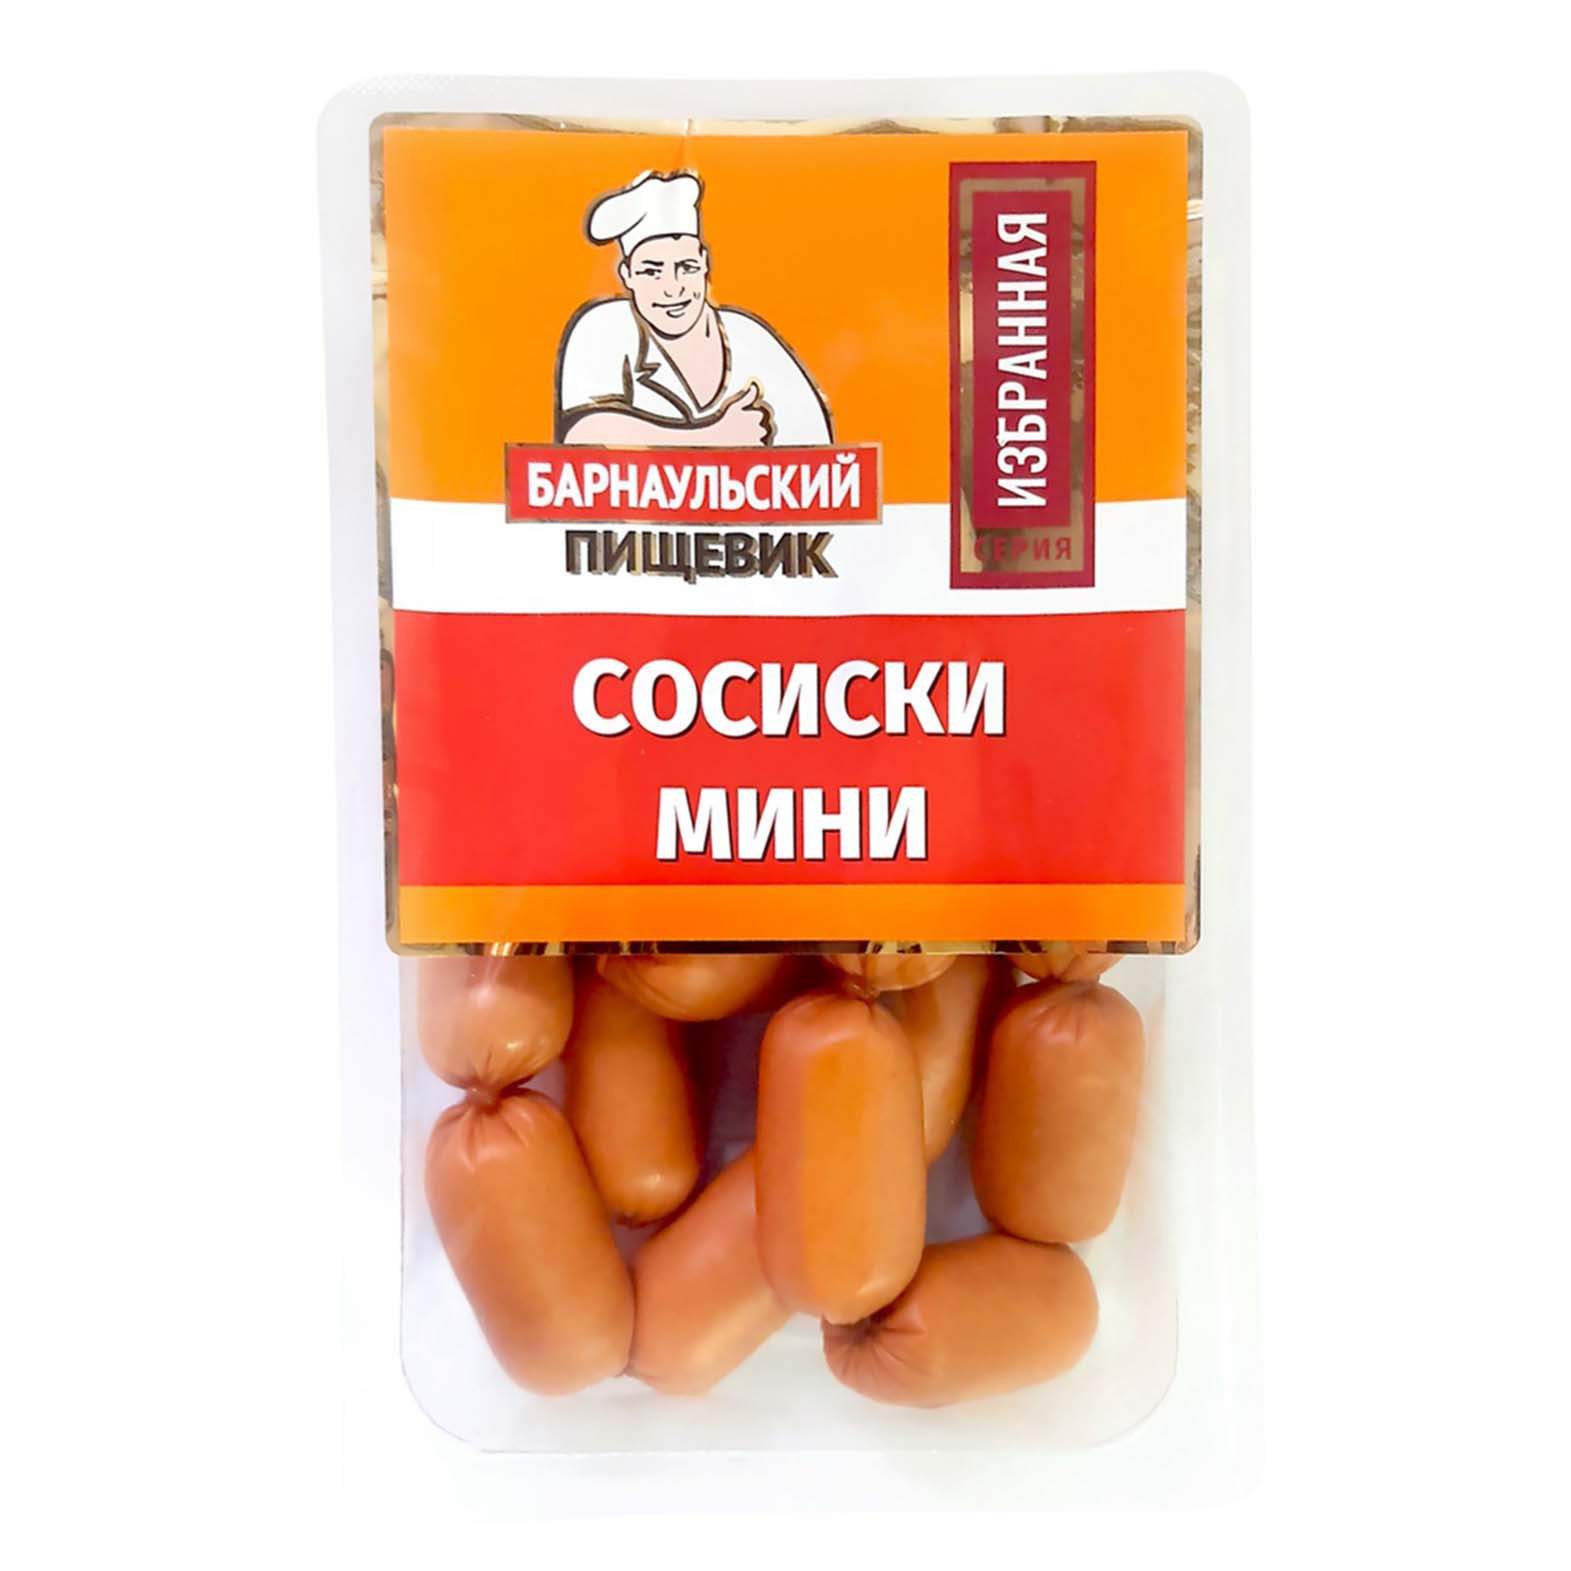 Сосиски Барнаульский пищевик Мини вареные 400 г